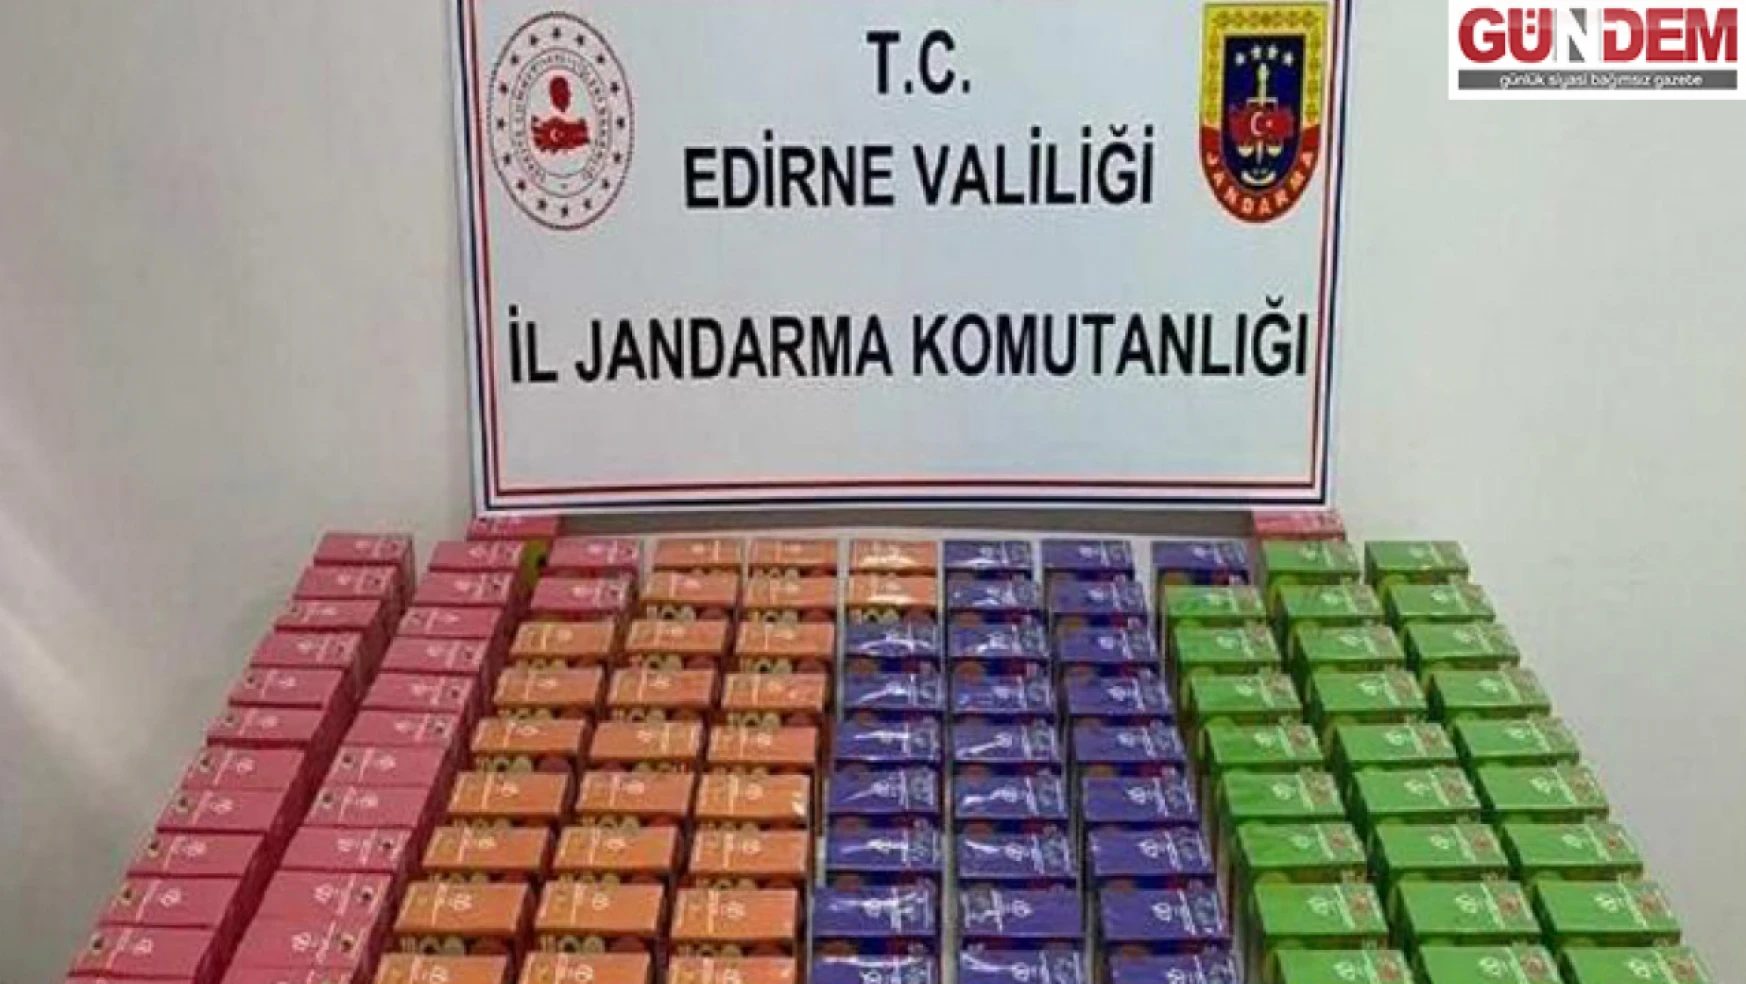 Edirne'de 1179 adet elektronik sigara ele geçirildi